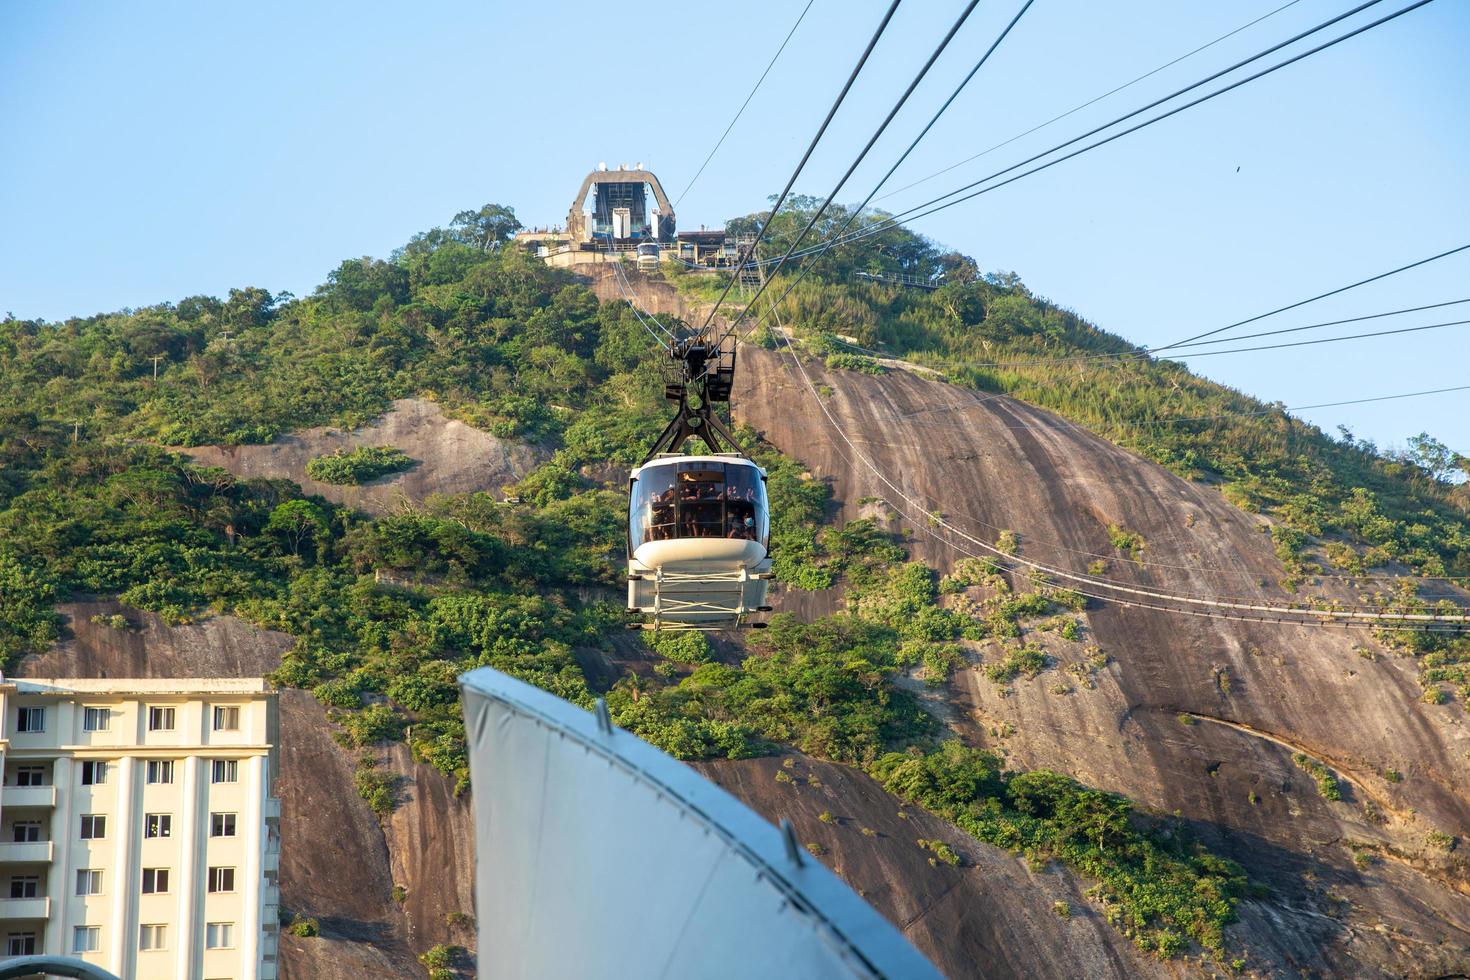 río de janeiro, brasil, octubre de 2019 - teleférico en la montaña del pan de azúcar, vista del paisaje urbano de río y teleférico del pan de azúcar. foto